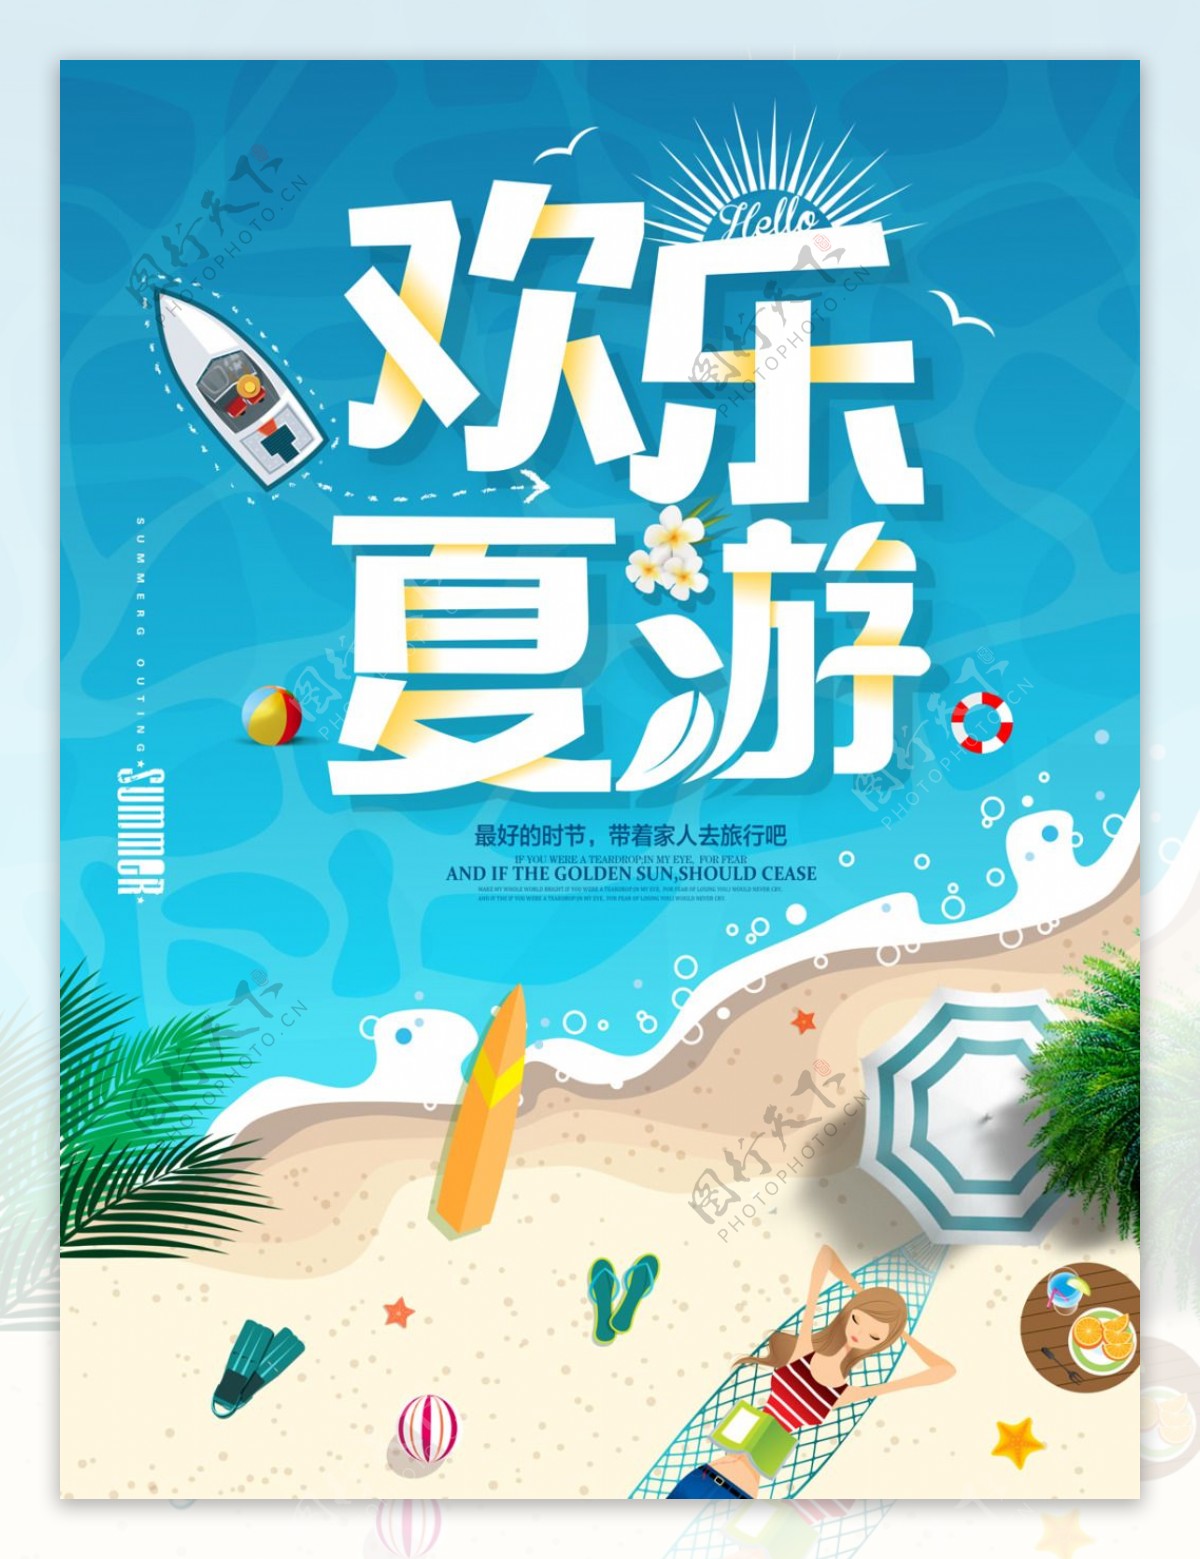 夏季出游狂欢旅游促销海报PSD分层素材